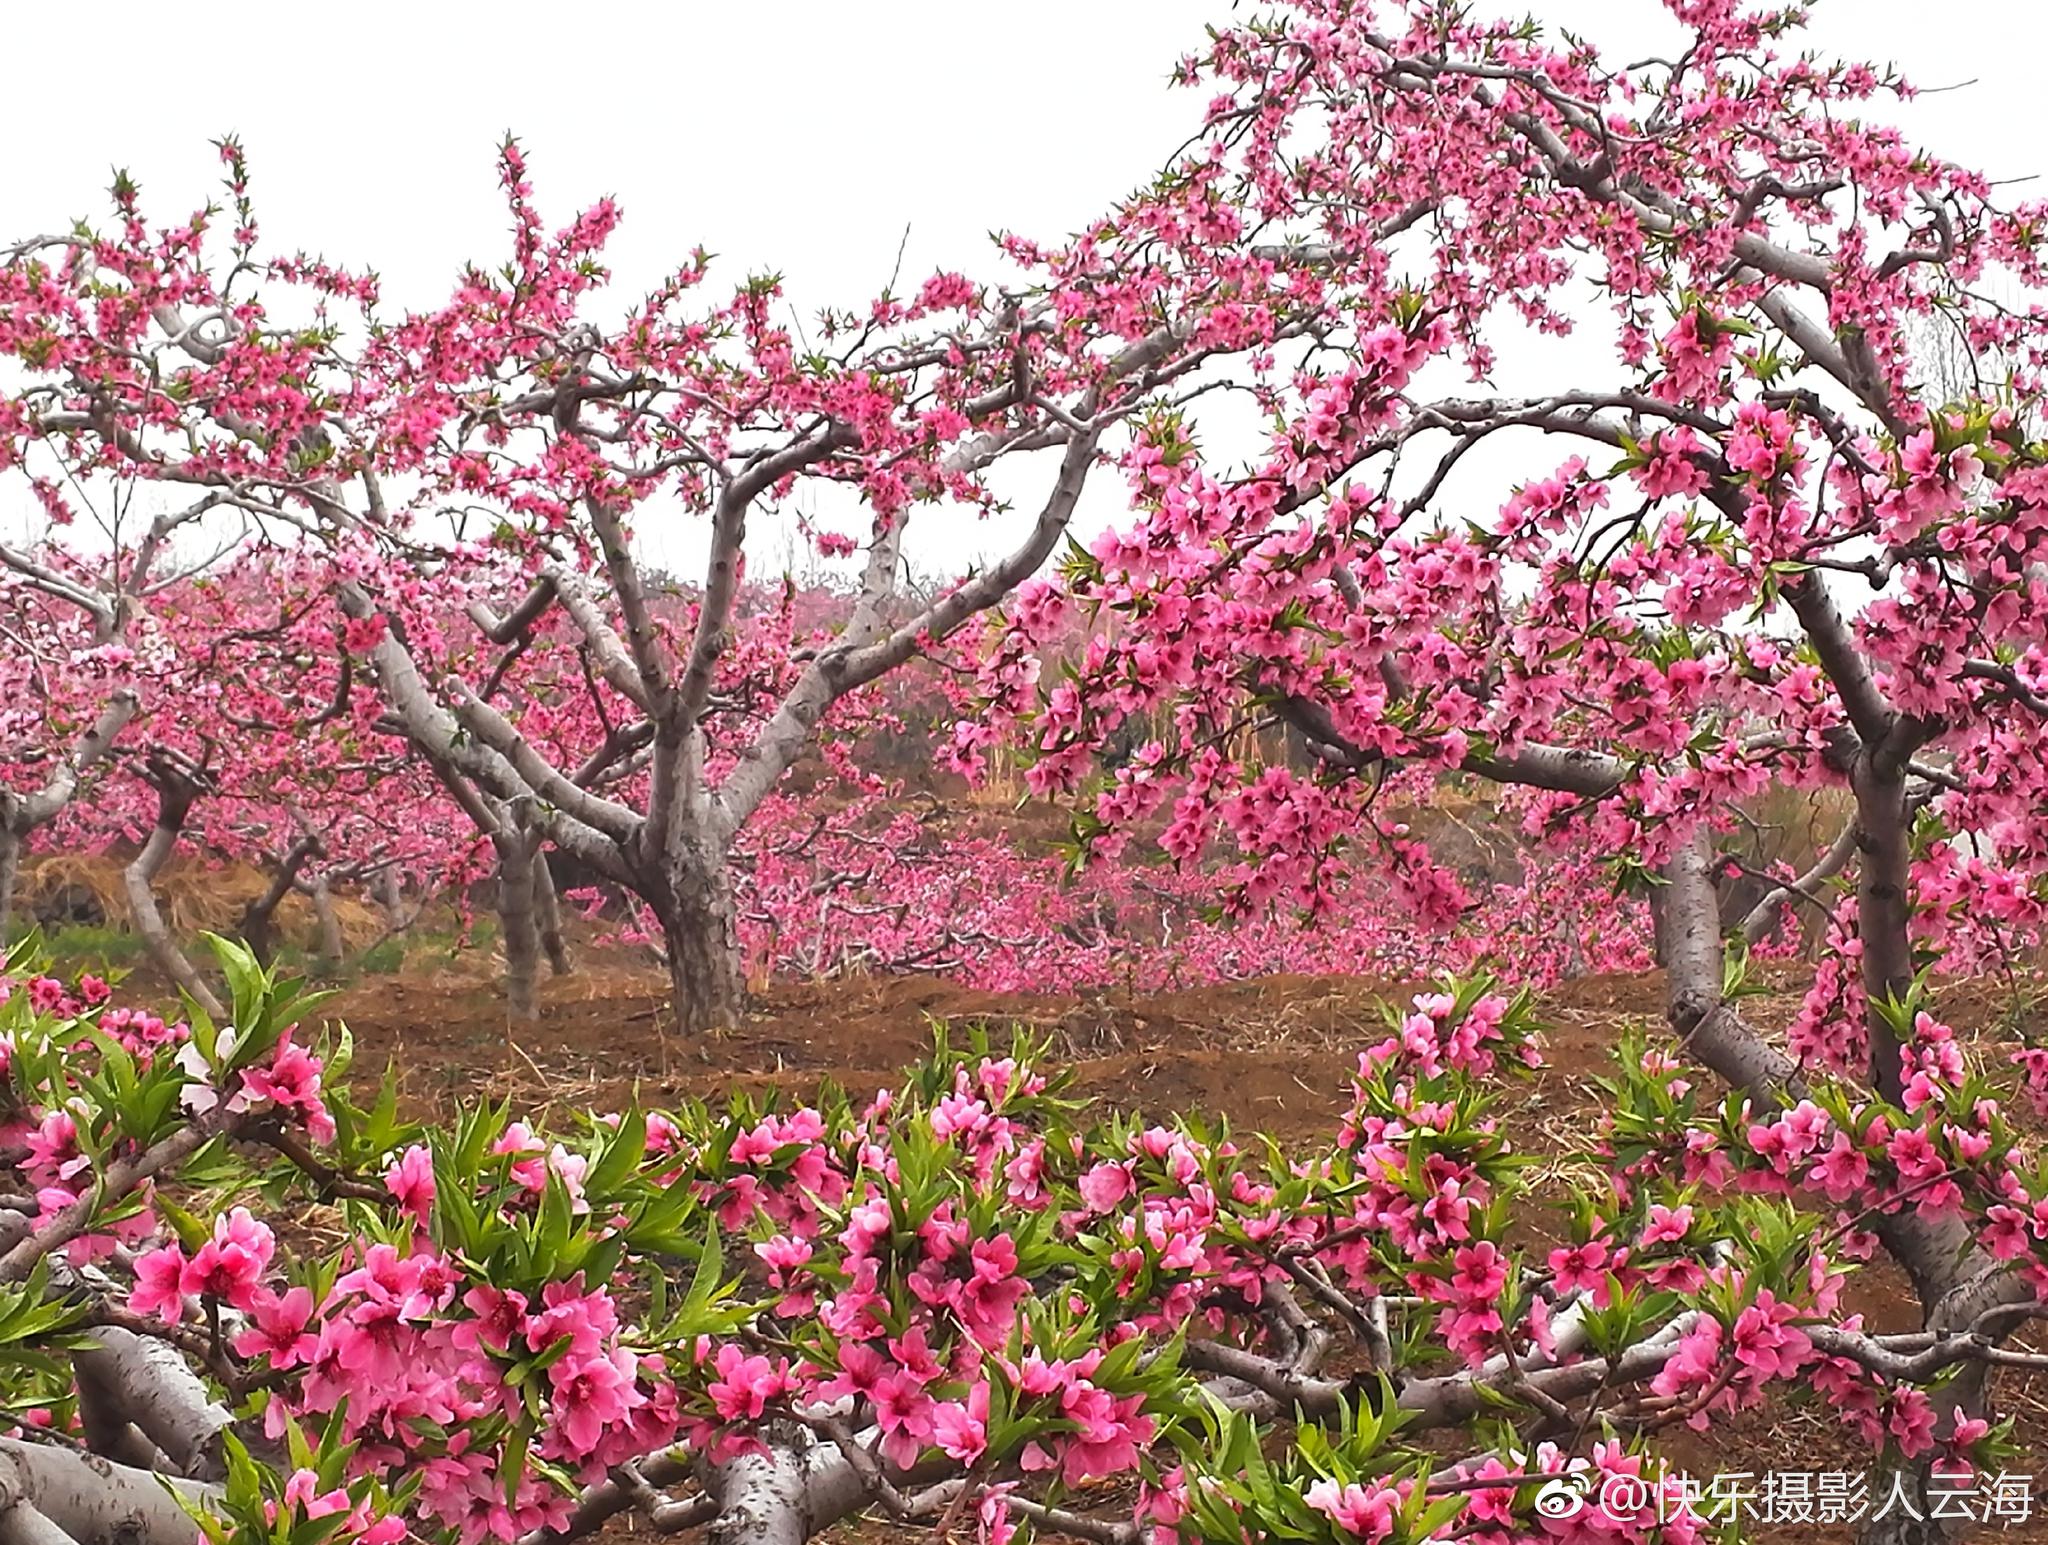 潍坊,临朐,营子黄埠店,桃花盛开的地方。